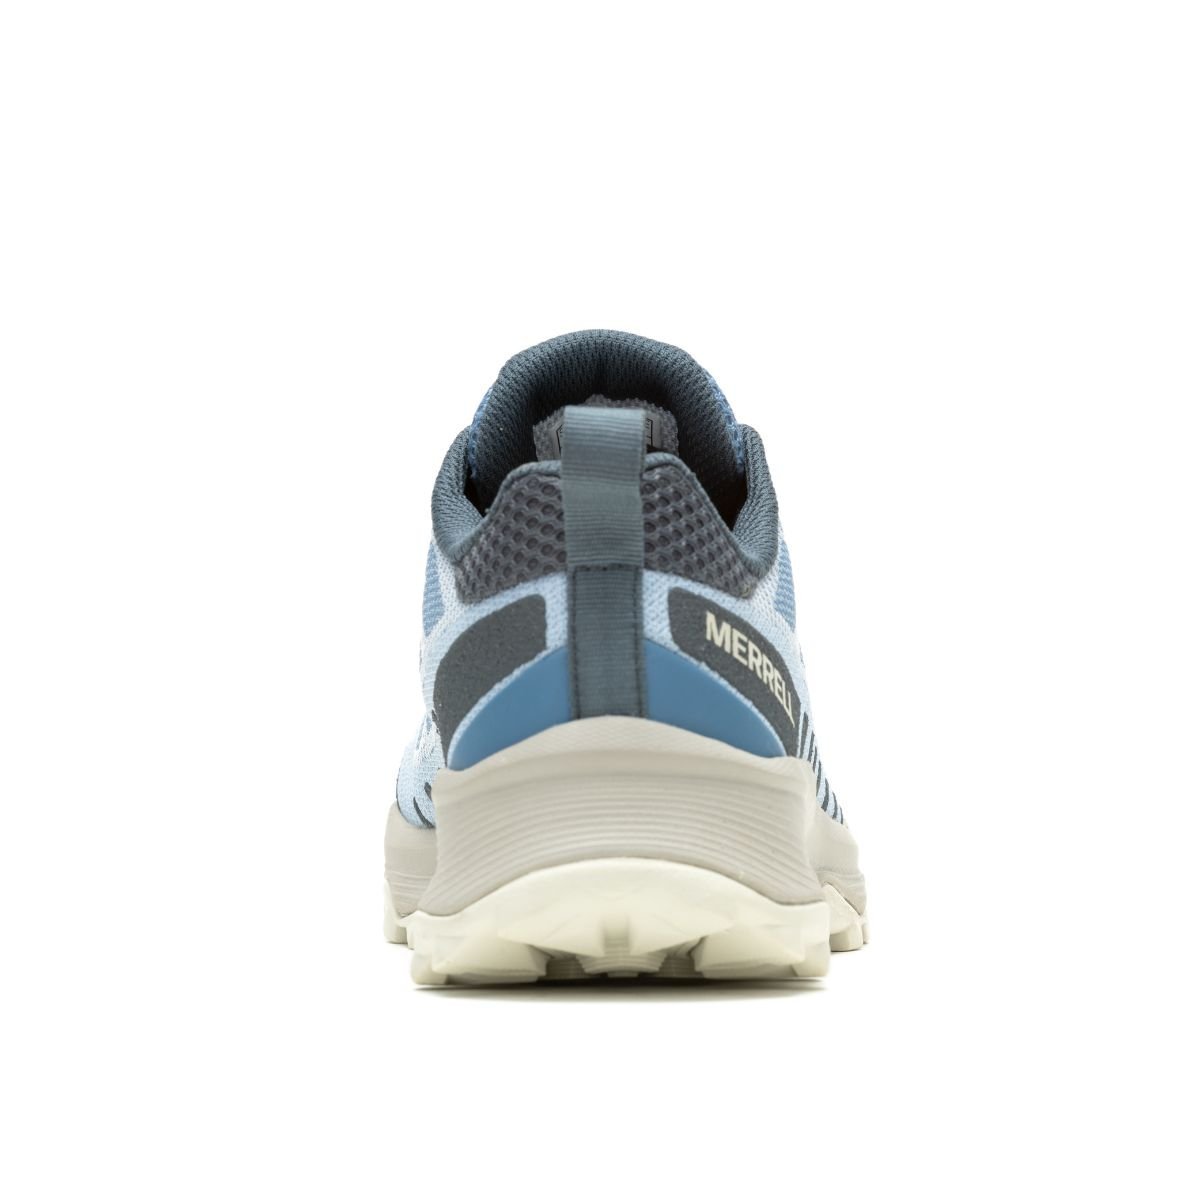 Topánky Merrell J038084 Speed Eco W - modrá